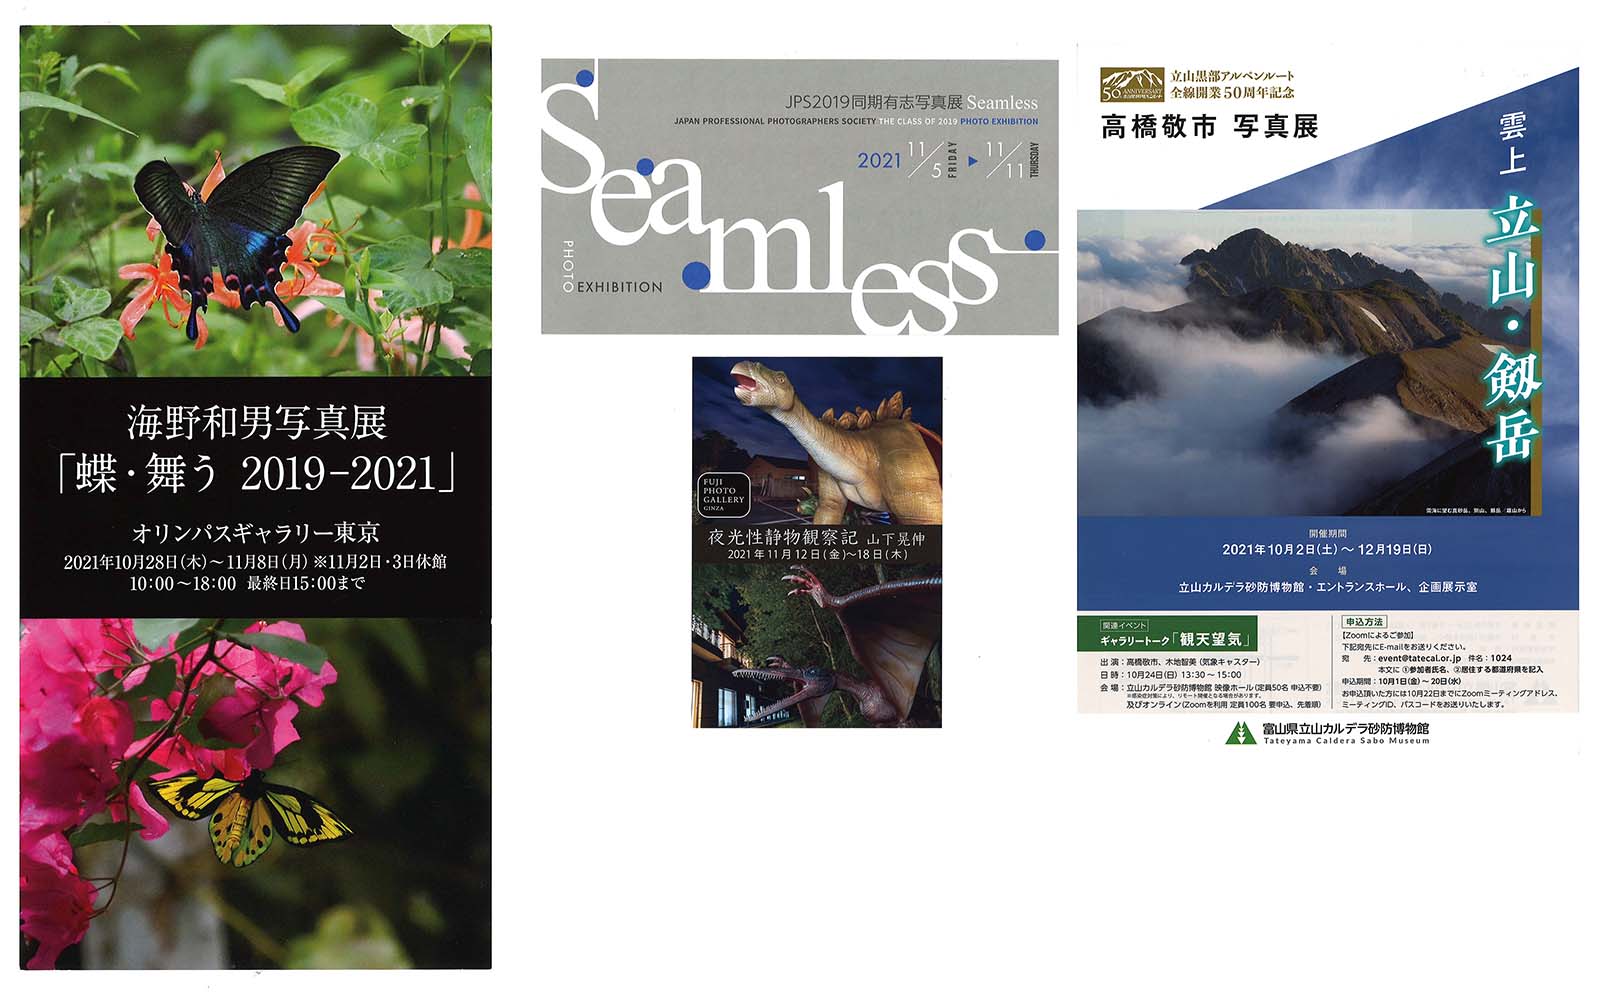 展覧会情報2021年11月 - 公益社団法人 日本写真家協会